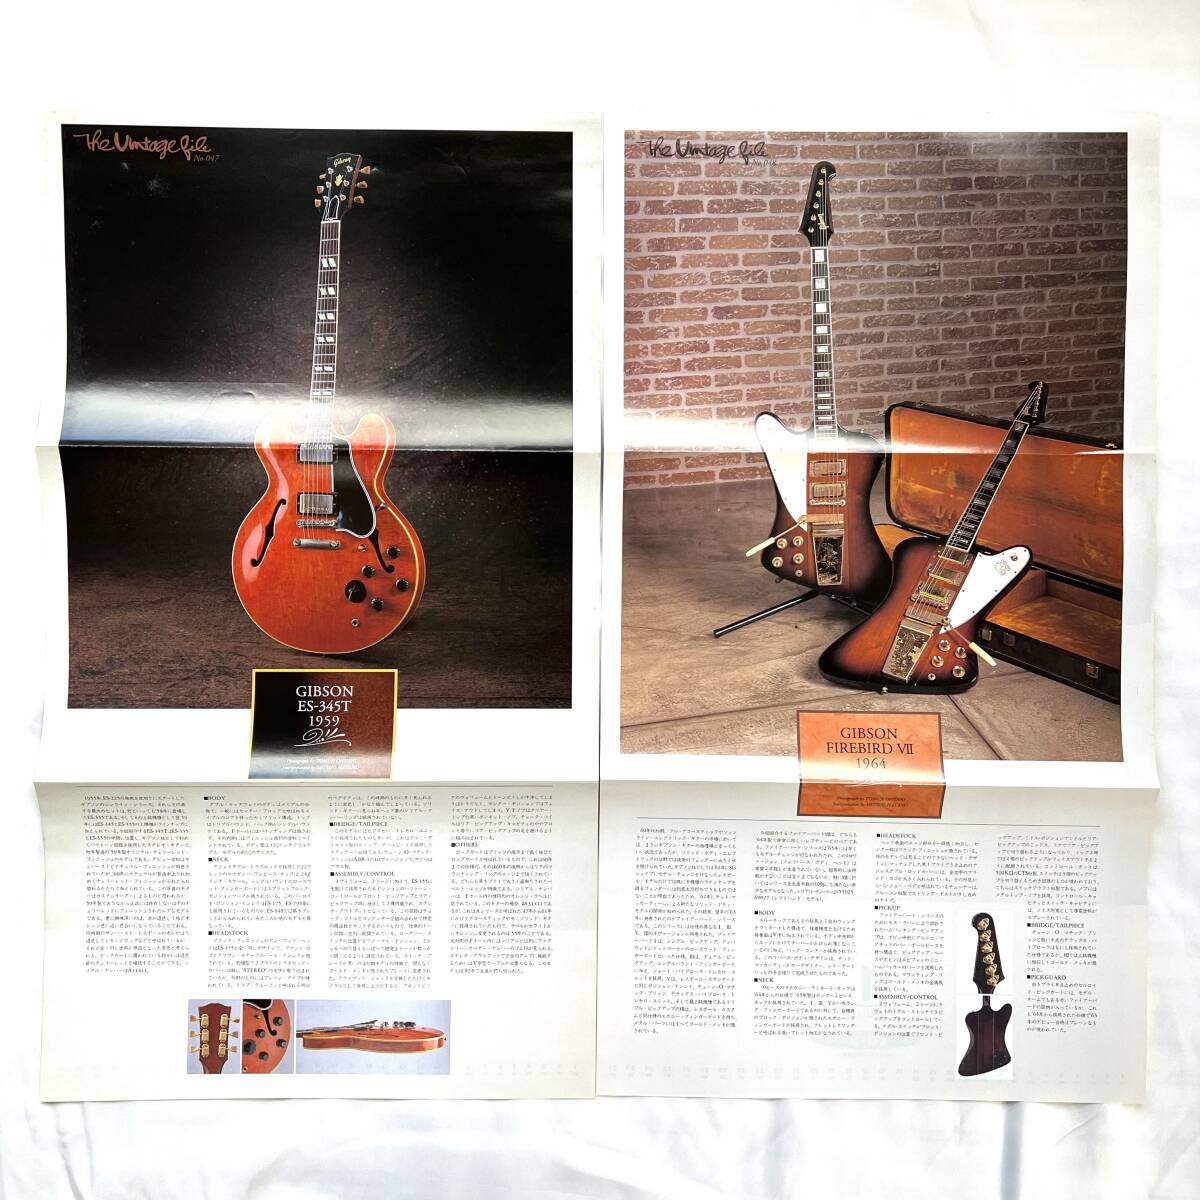  плеер .. включая The Vintage File 047-084 1997 год 12 месяц -2001 год 1 месяц Complete 38 листов каталог крыло Gibson Fender Gibson